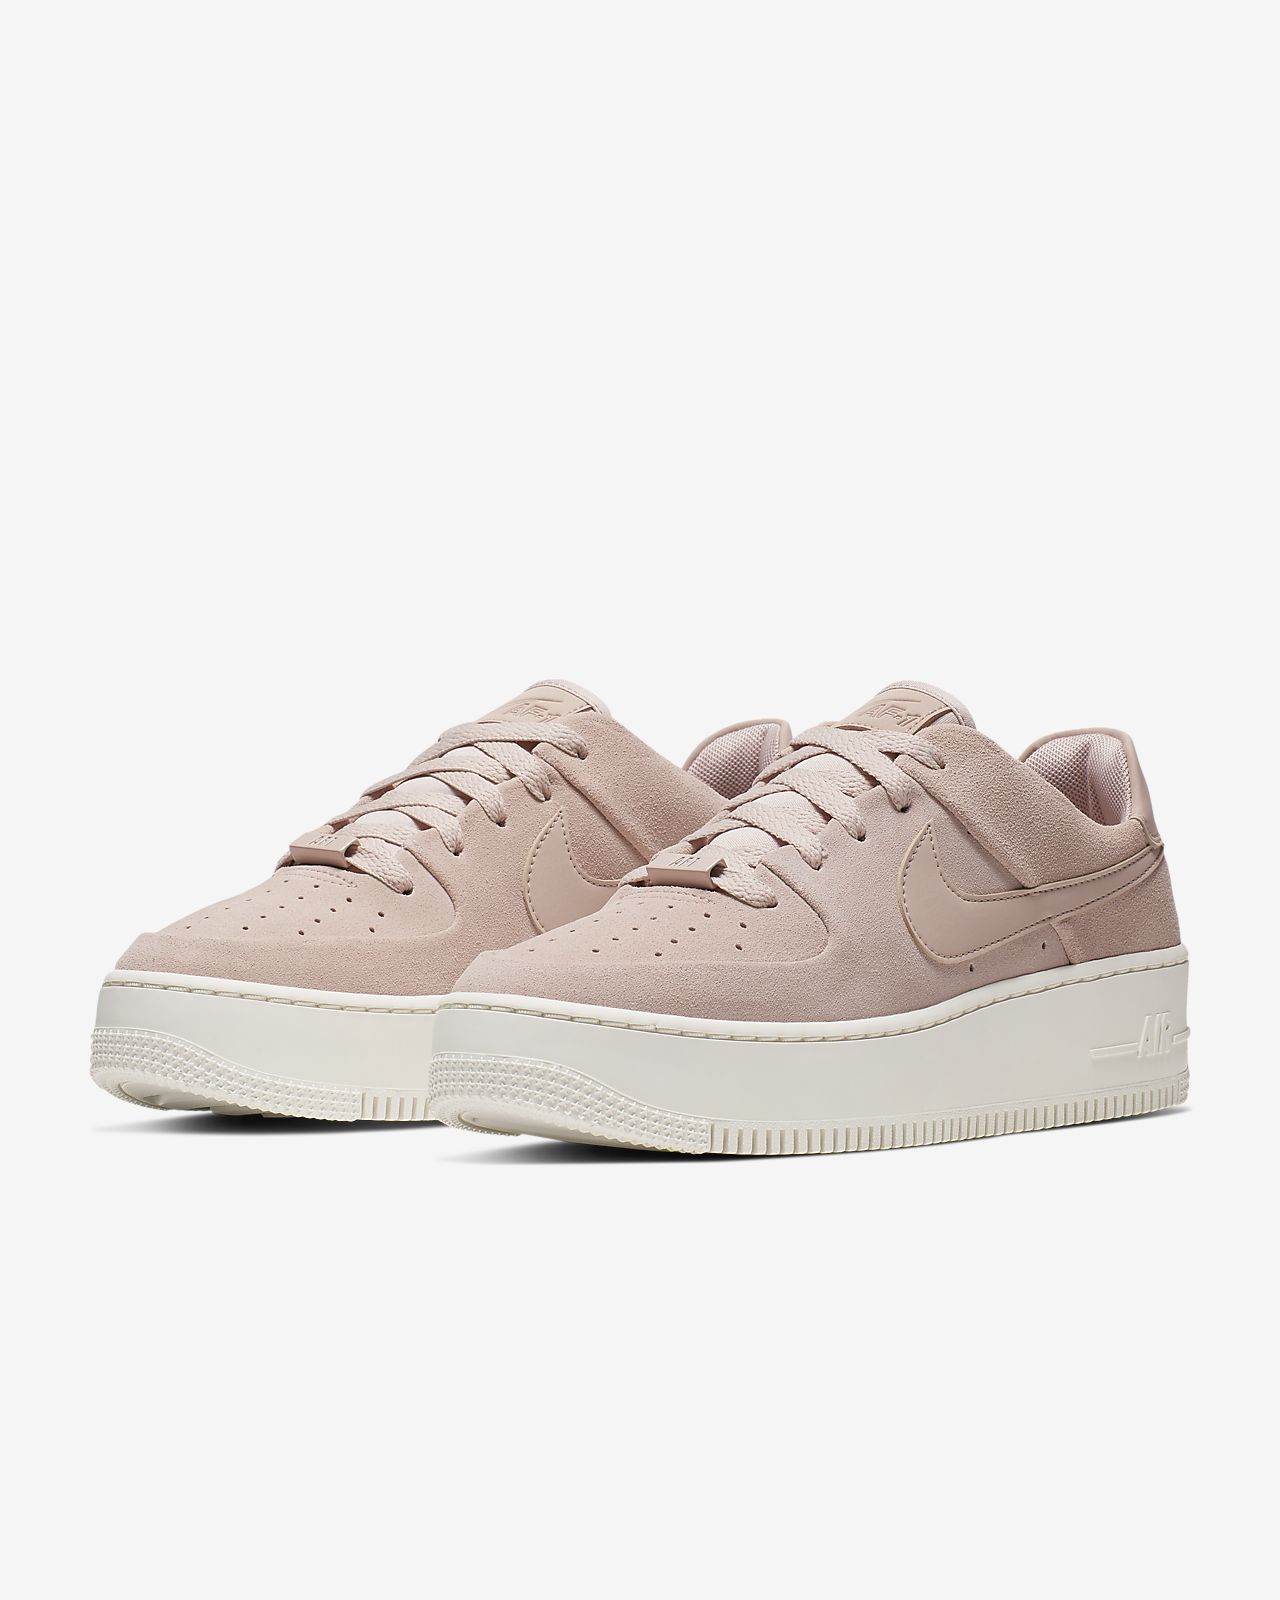 nike pink air force 1 sage sneakers